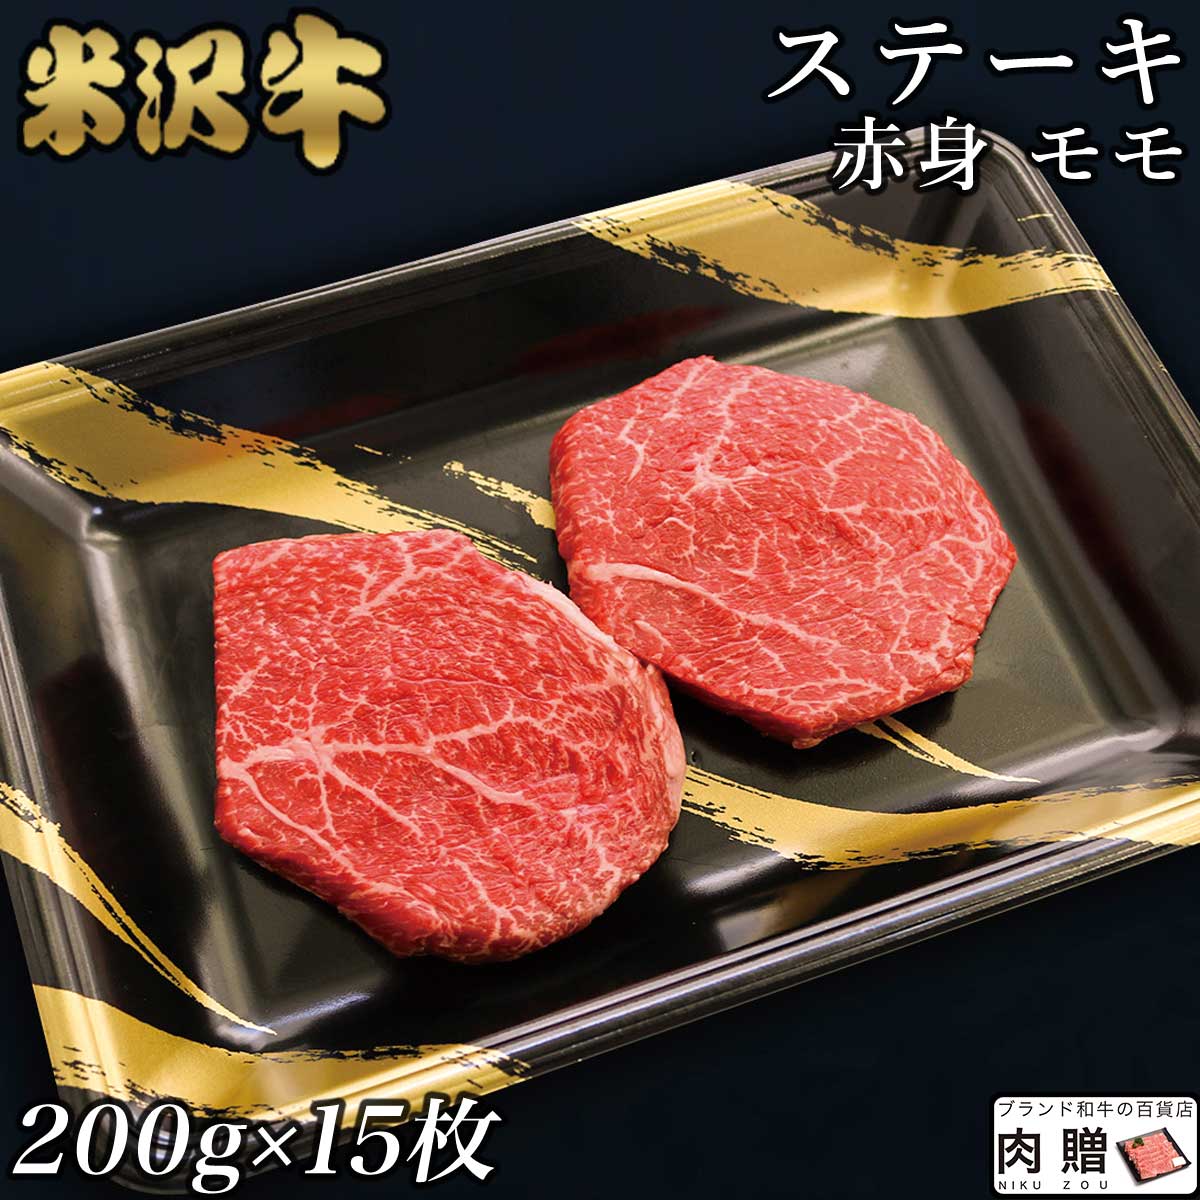 赤身肉 米沢牛 ステーキ モモ 200g×15枚 3,000g 3kg A5 A4 [送料無料] | 肉 赤身肉 塊 ブロック肉 ステーキ 結婚祝い…